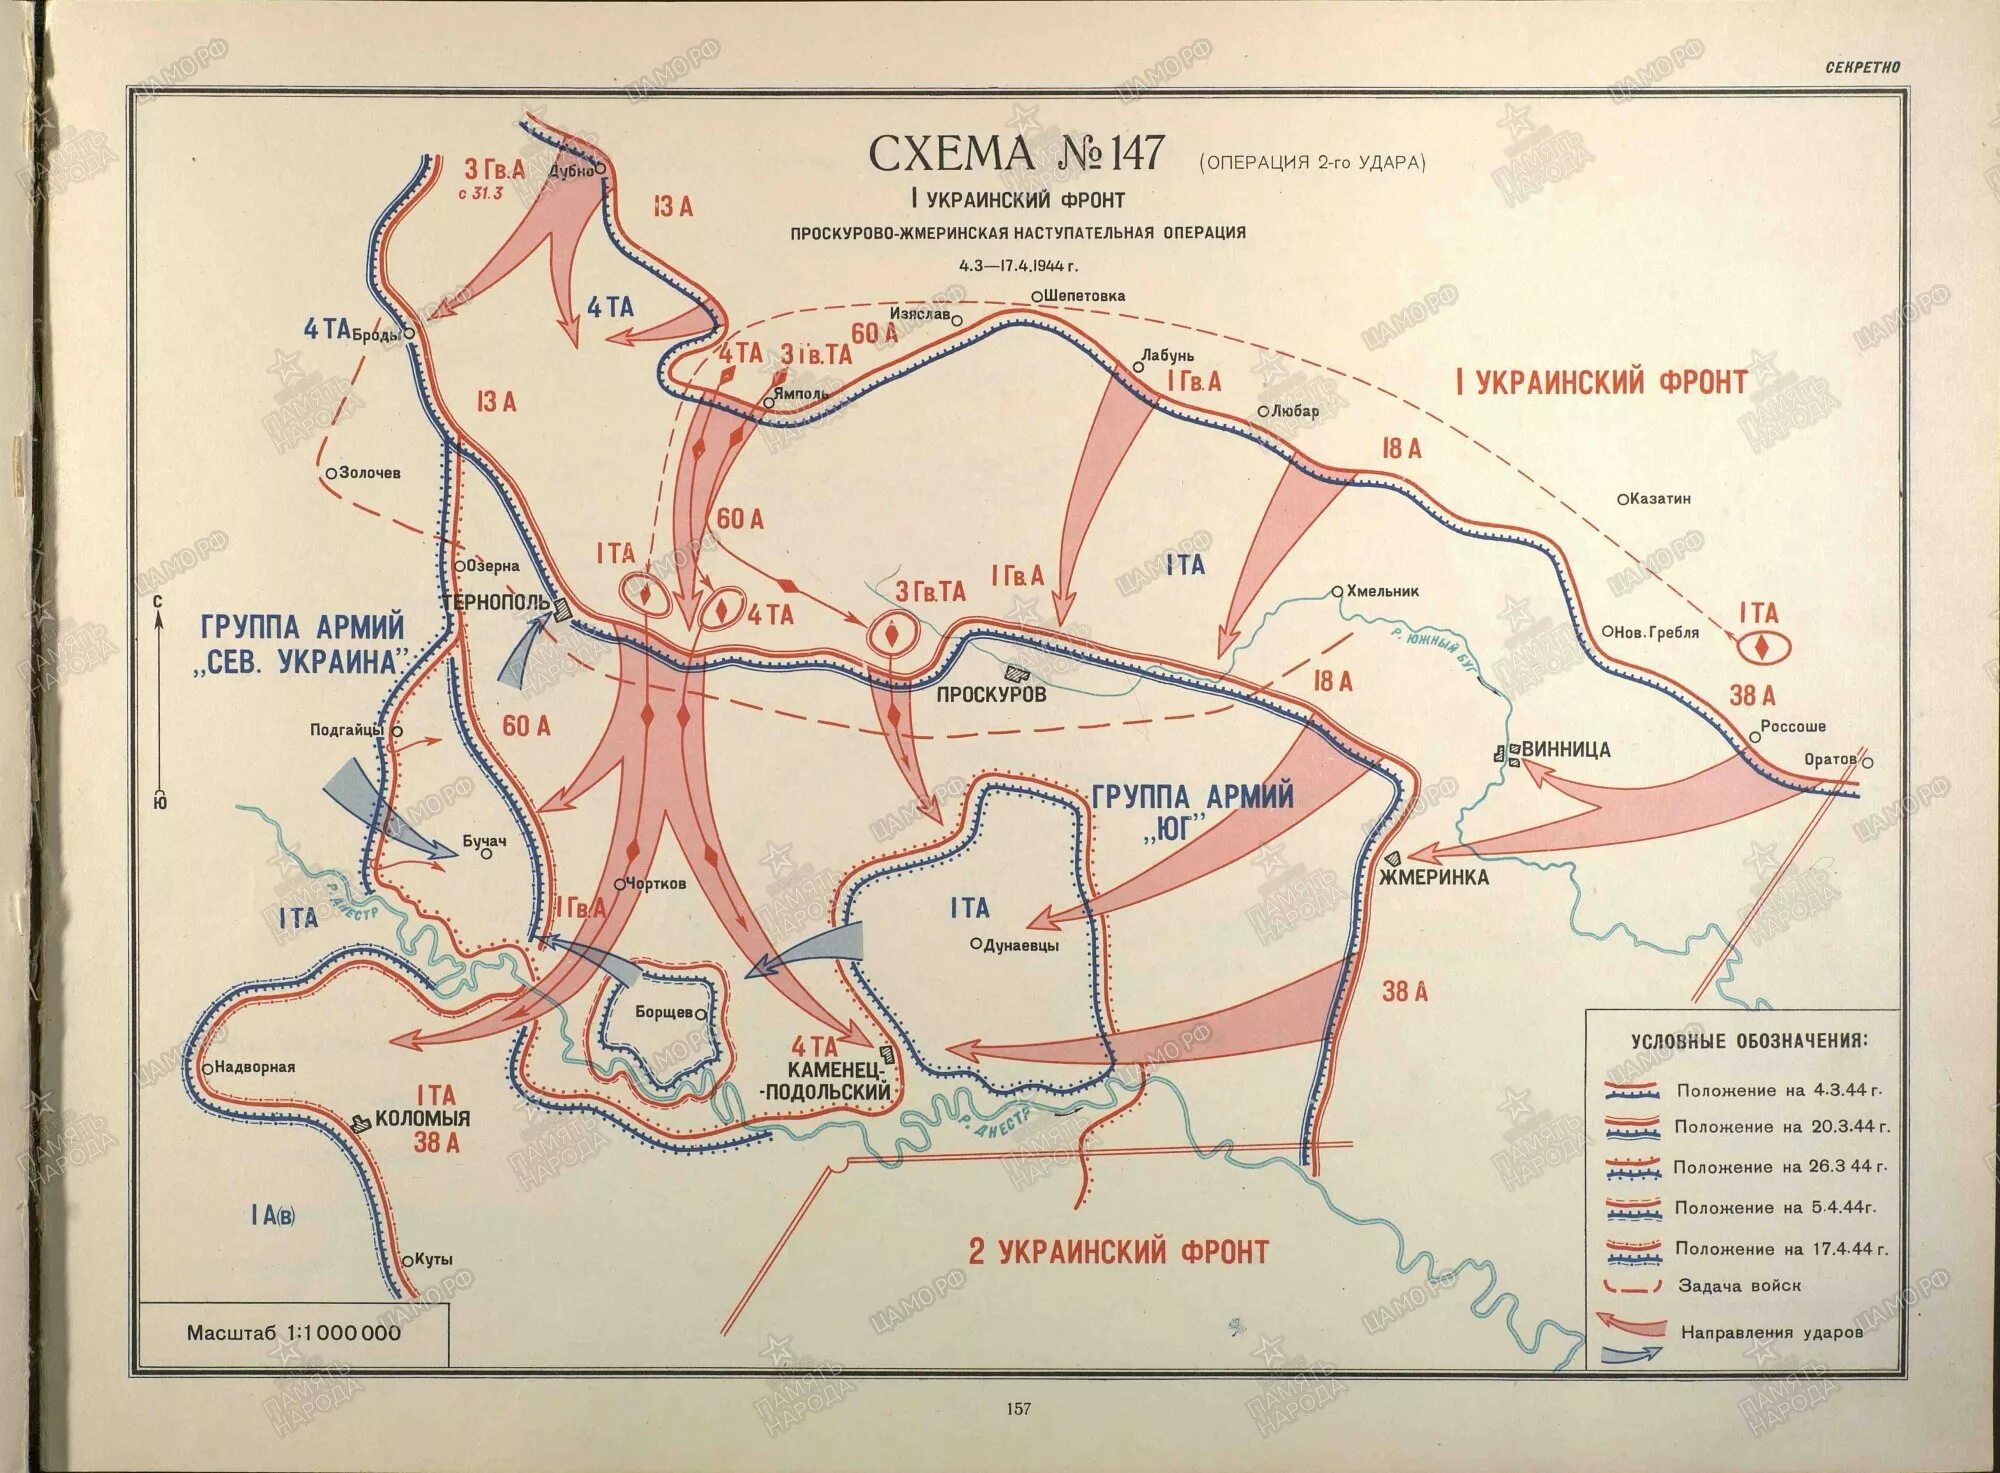 Украинский фронт апреля 1. Проскуровско-Черновицкая наступательная операция 1944. Ровно-Луцкая наступательная операция. Ровно-Луцкая наступательная операция 1944 года.